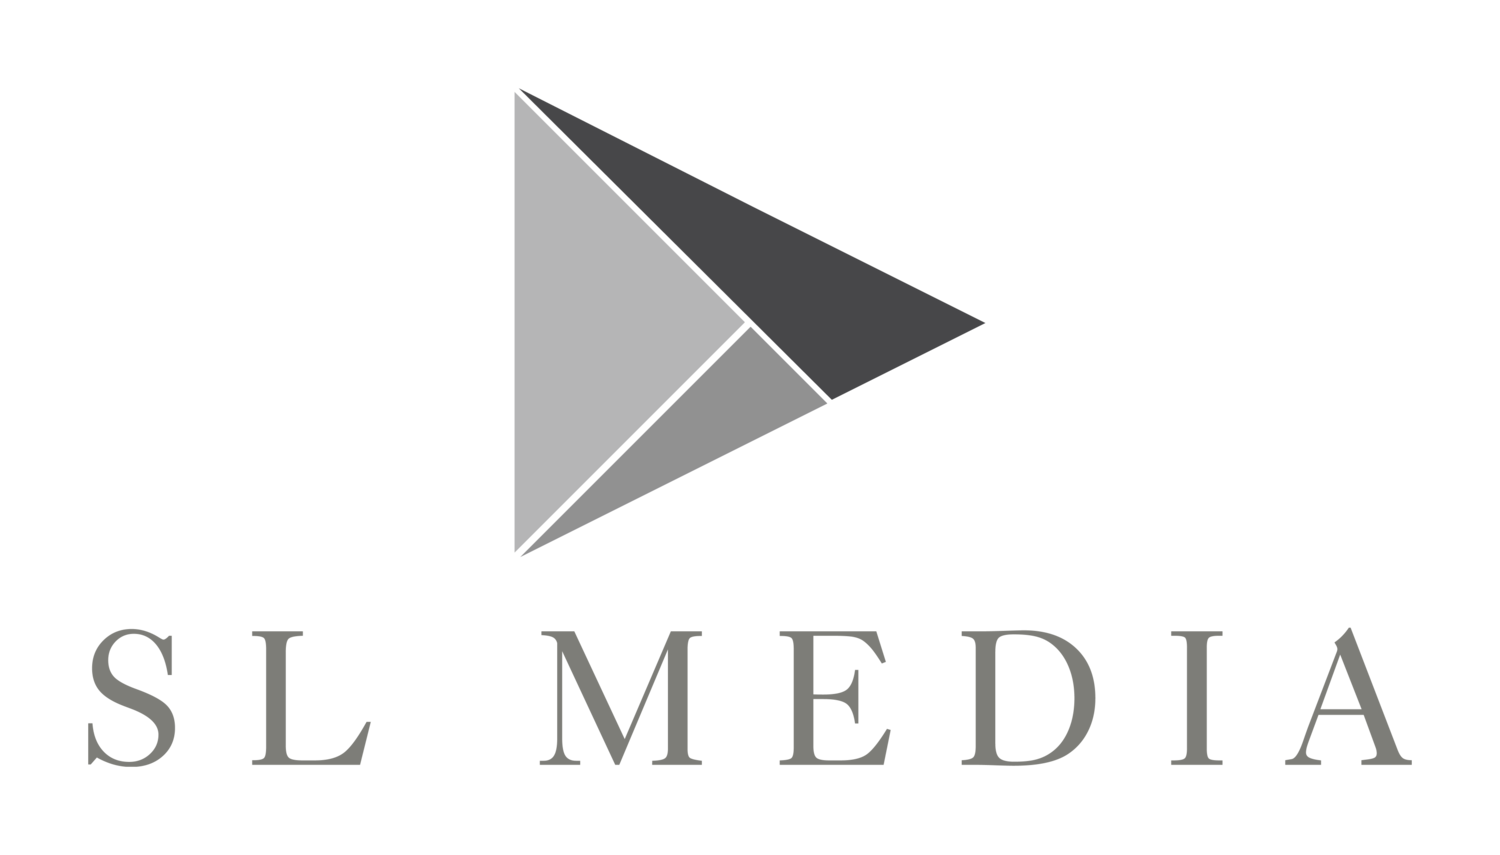 SL Media